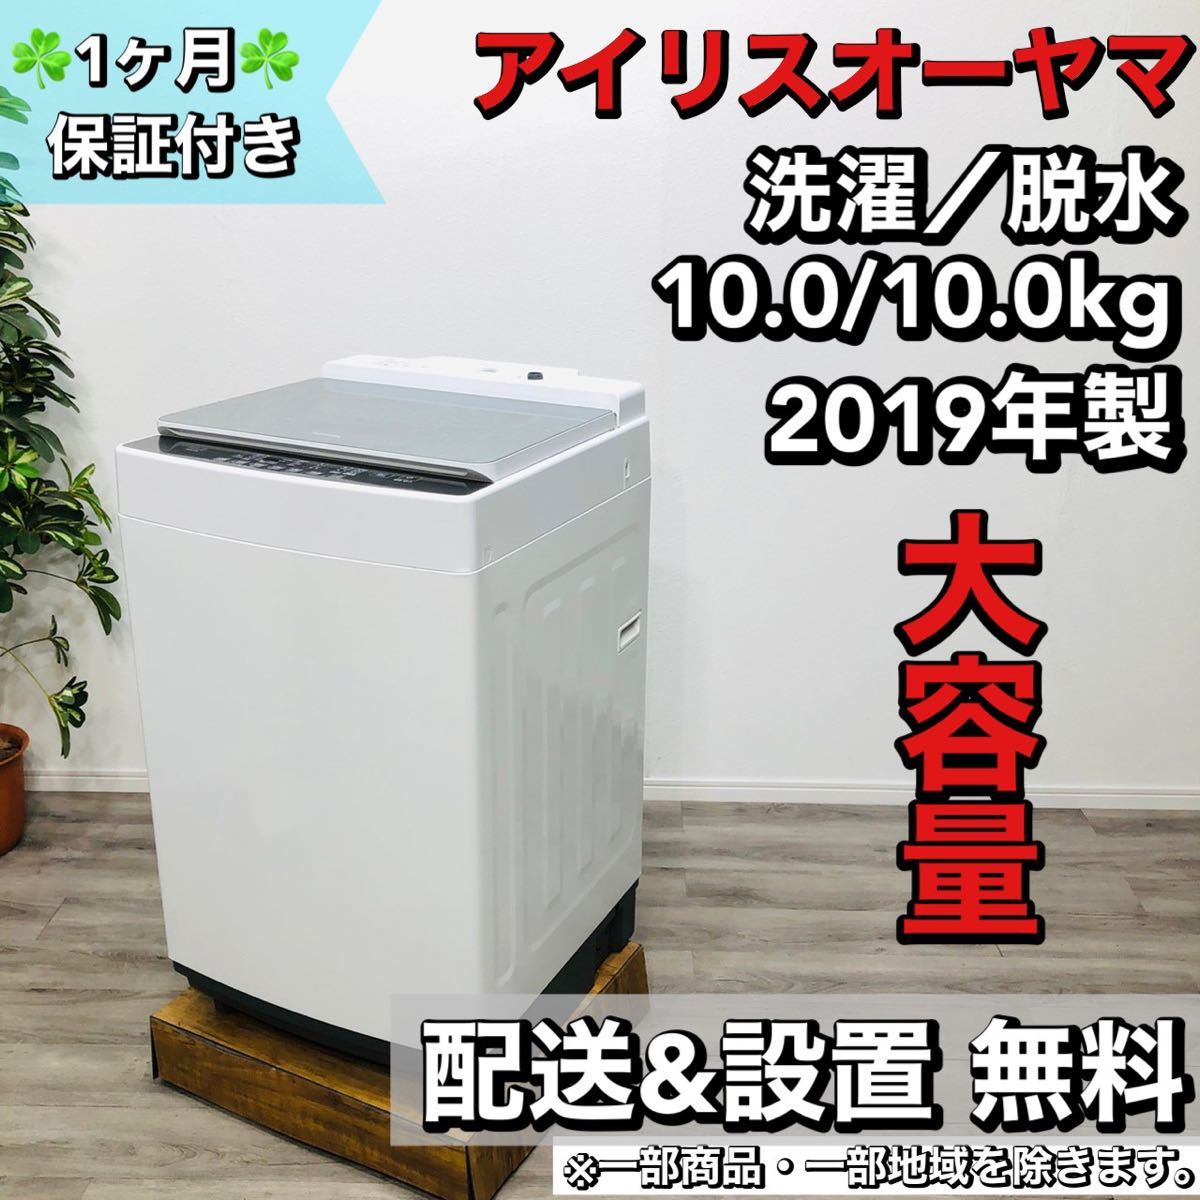 アイリスオーヤマ a1649 洗濯機 10.0kg 2019年製 20